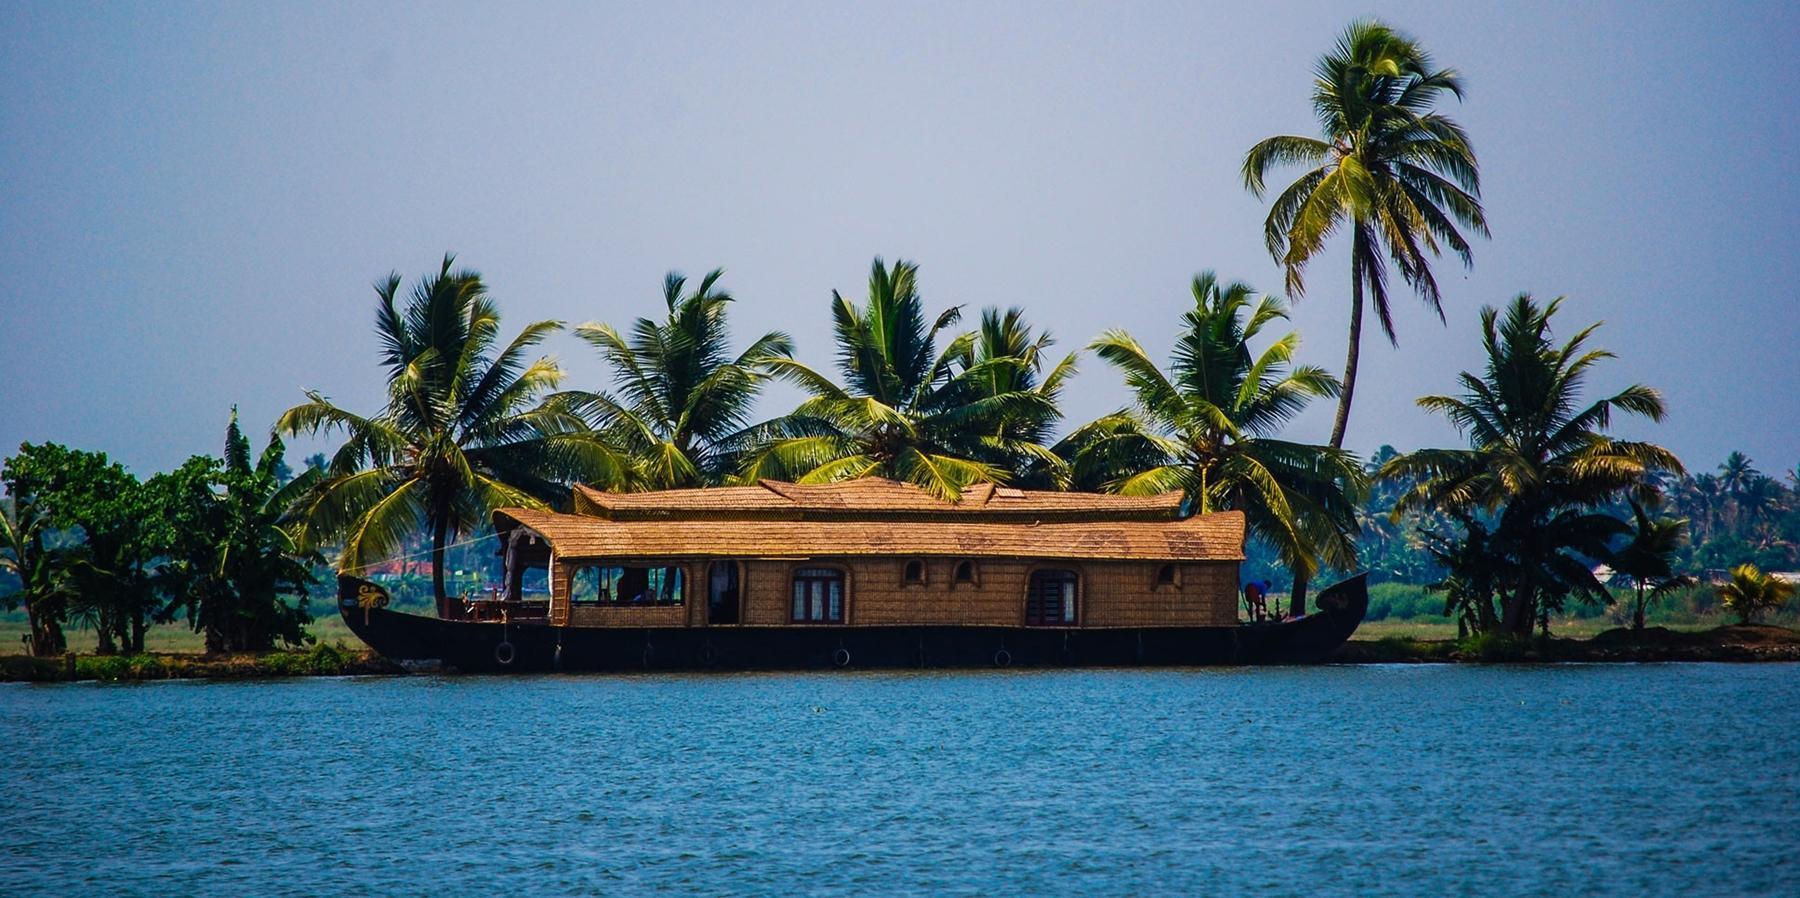 House Boat Ride in Kerala